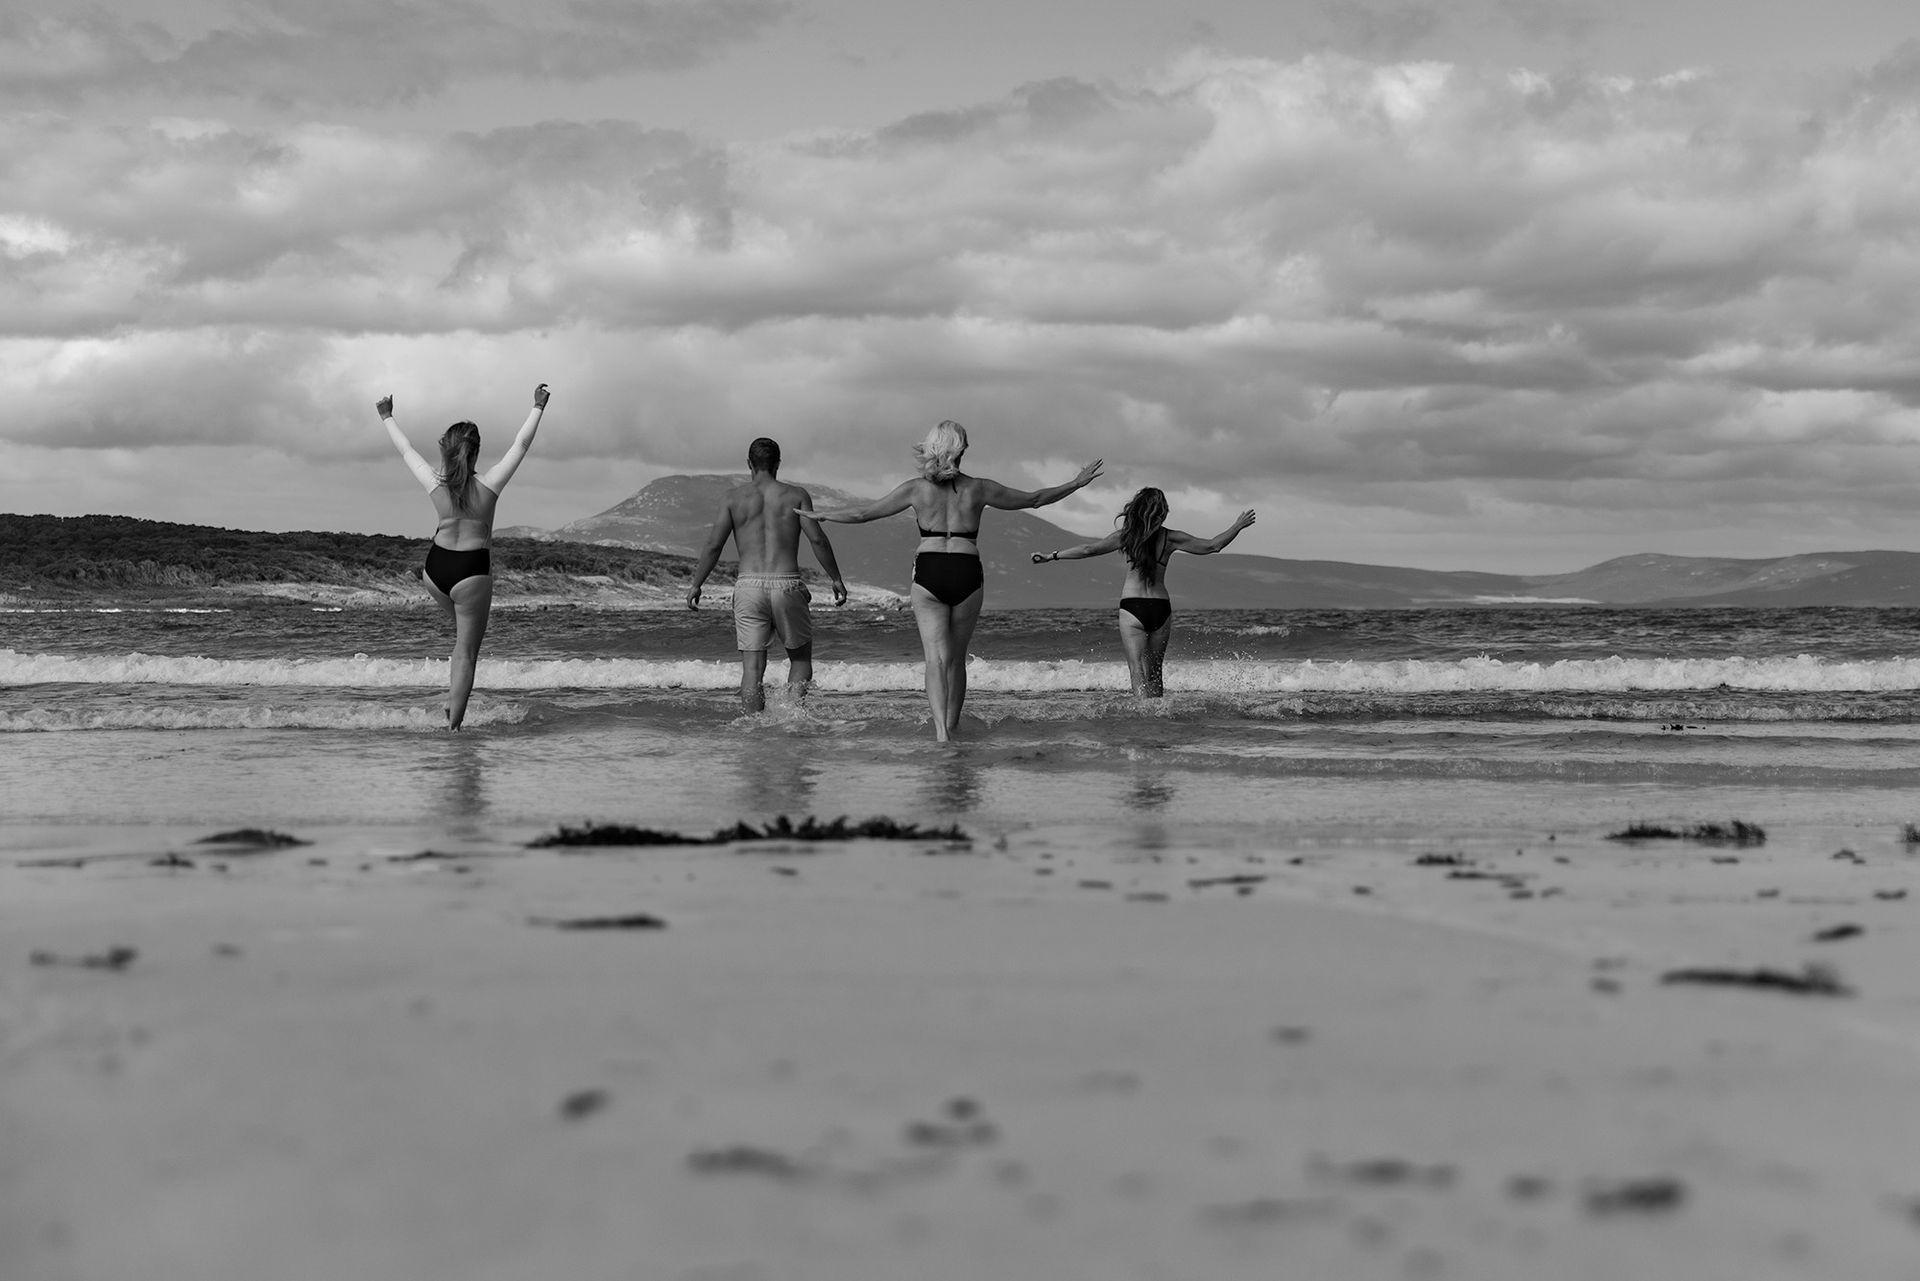 Four people embracing the ocean in winter on Flinders Island.